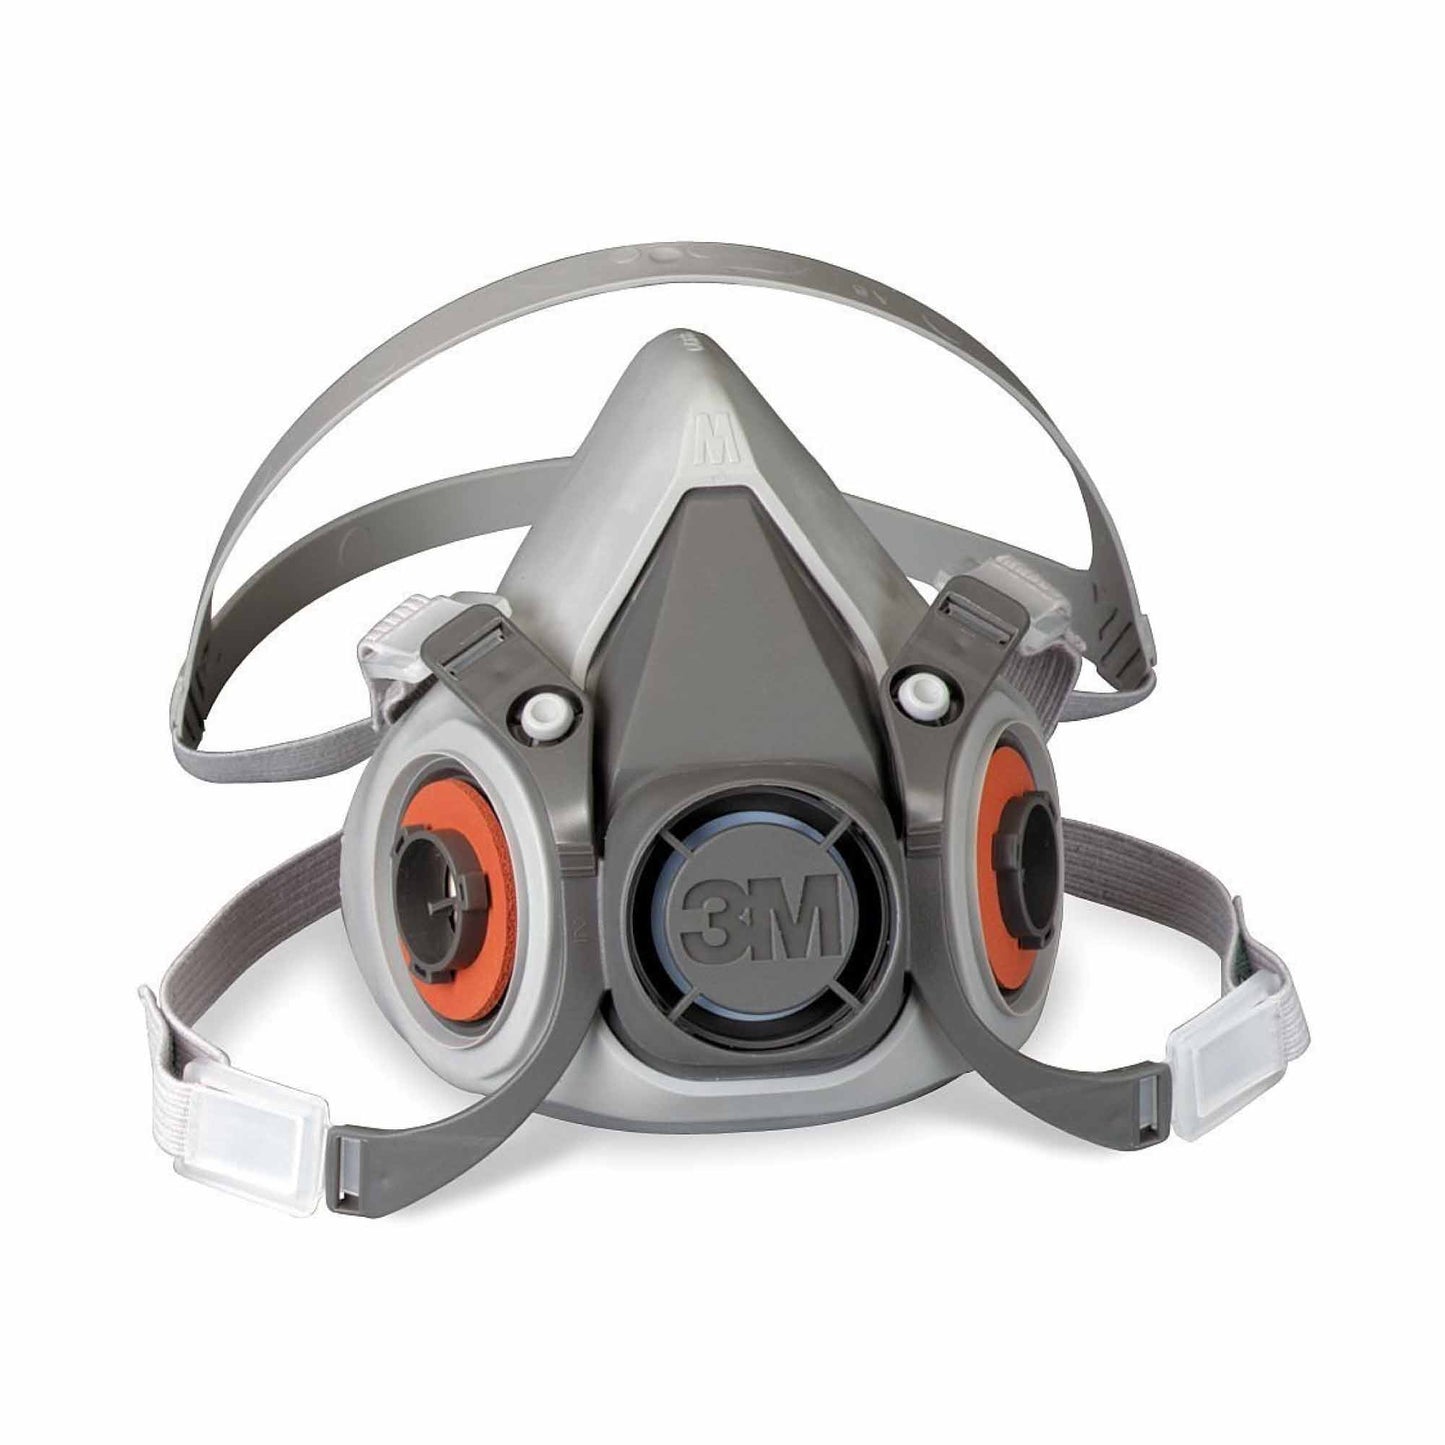 3M Welding Respirator Kit GP2 Filter Reusable Half Face Fume Mask Medium 6000